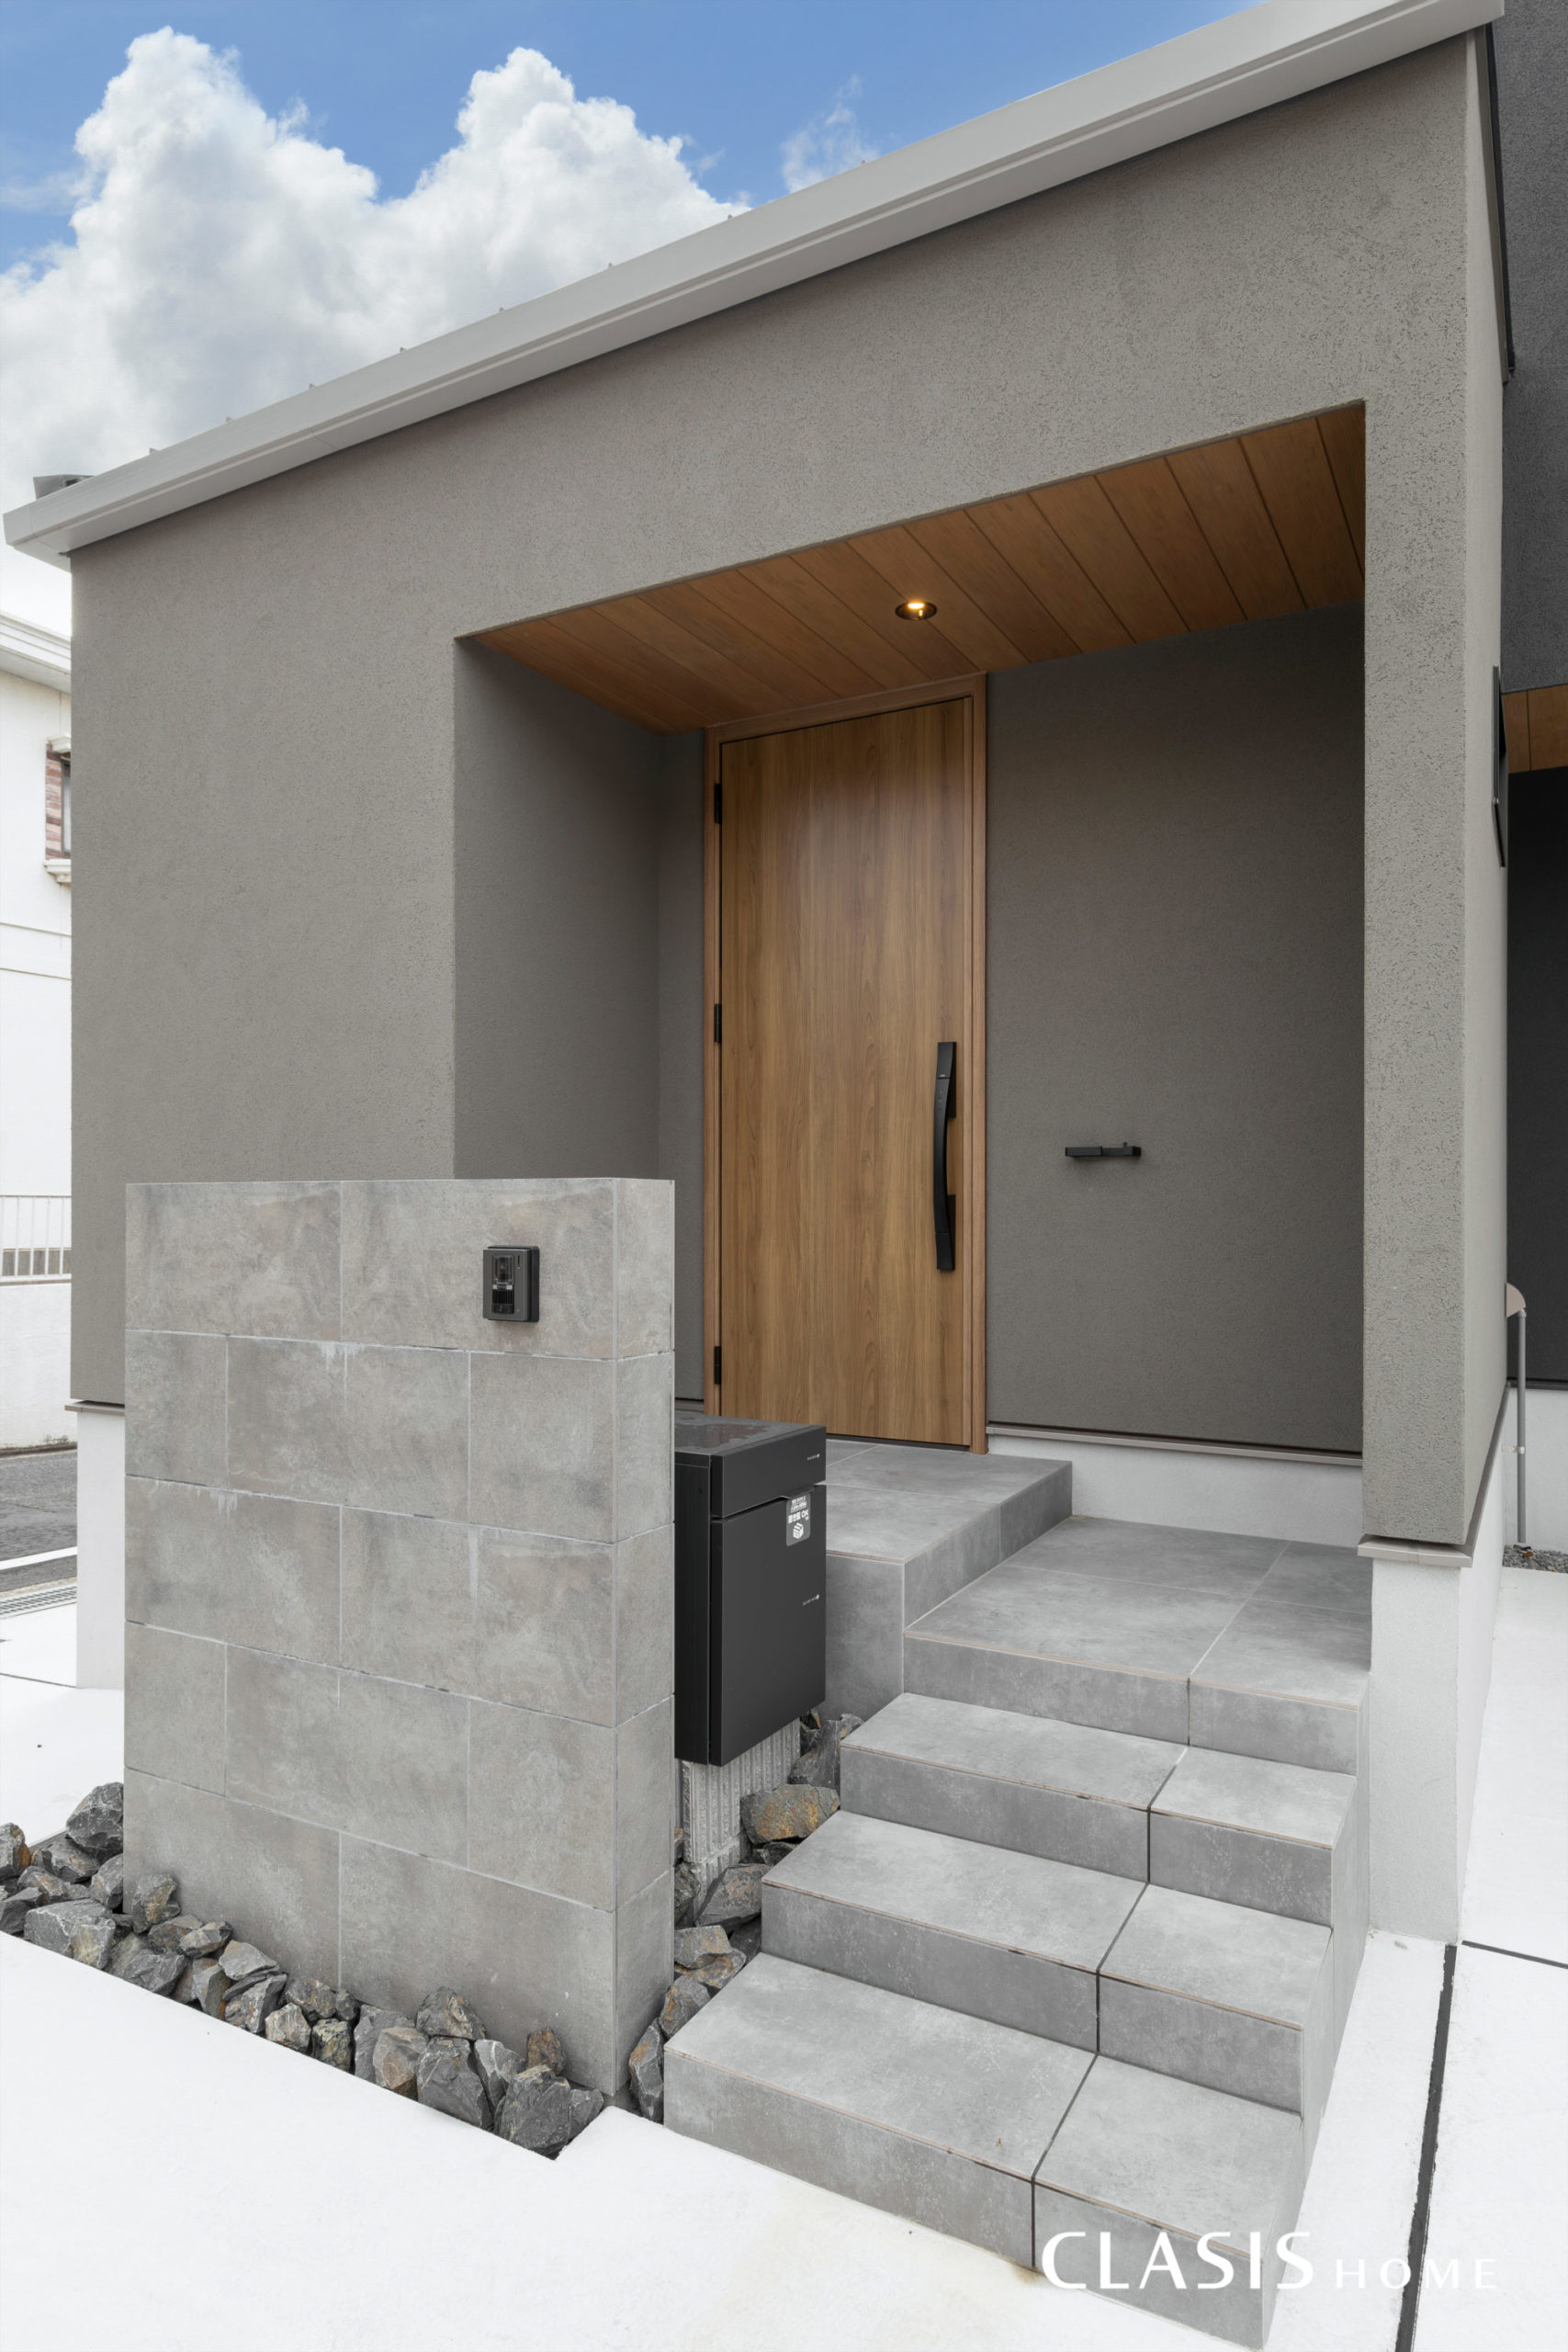 グレージュの塗り壁と木目の玄関扉を採用し、より柔らかい印象の玄関。